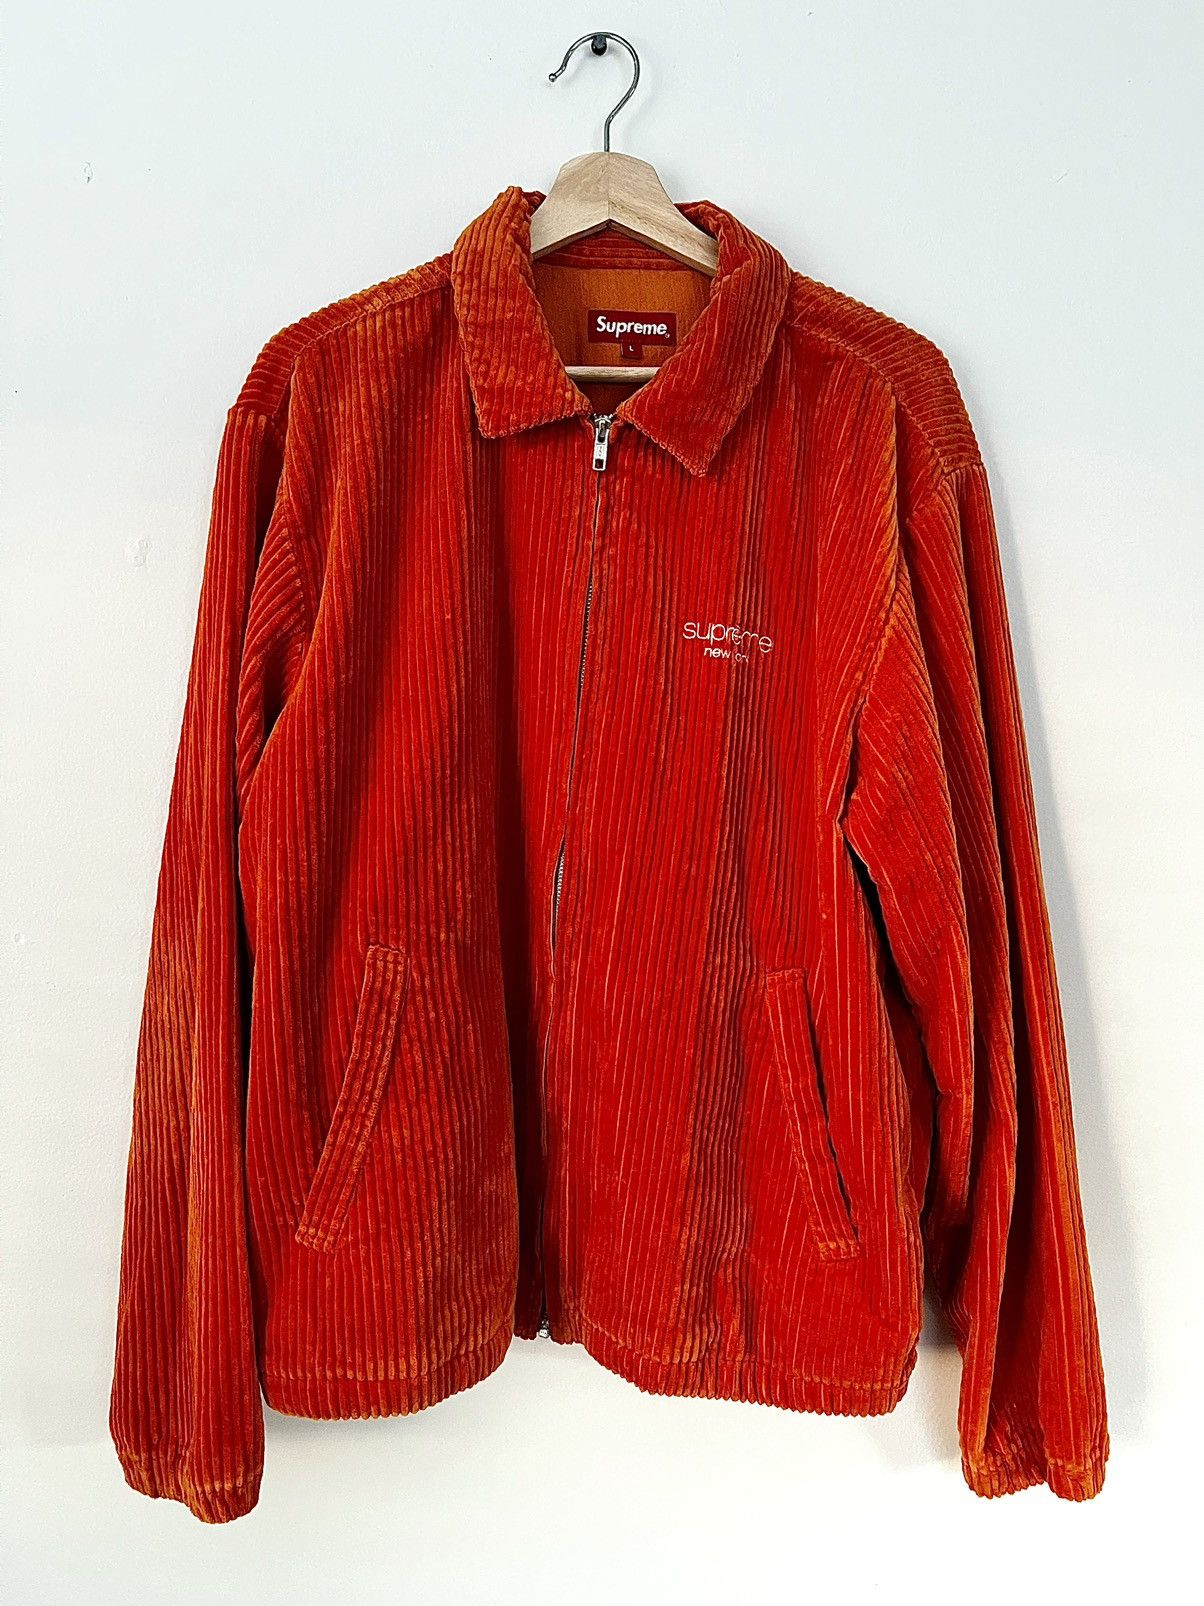 Supreme Supreme Wide Wale Corduroy Harrington Jacket Orange | Grailed